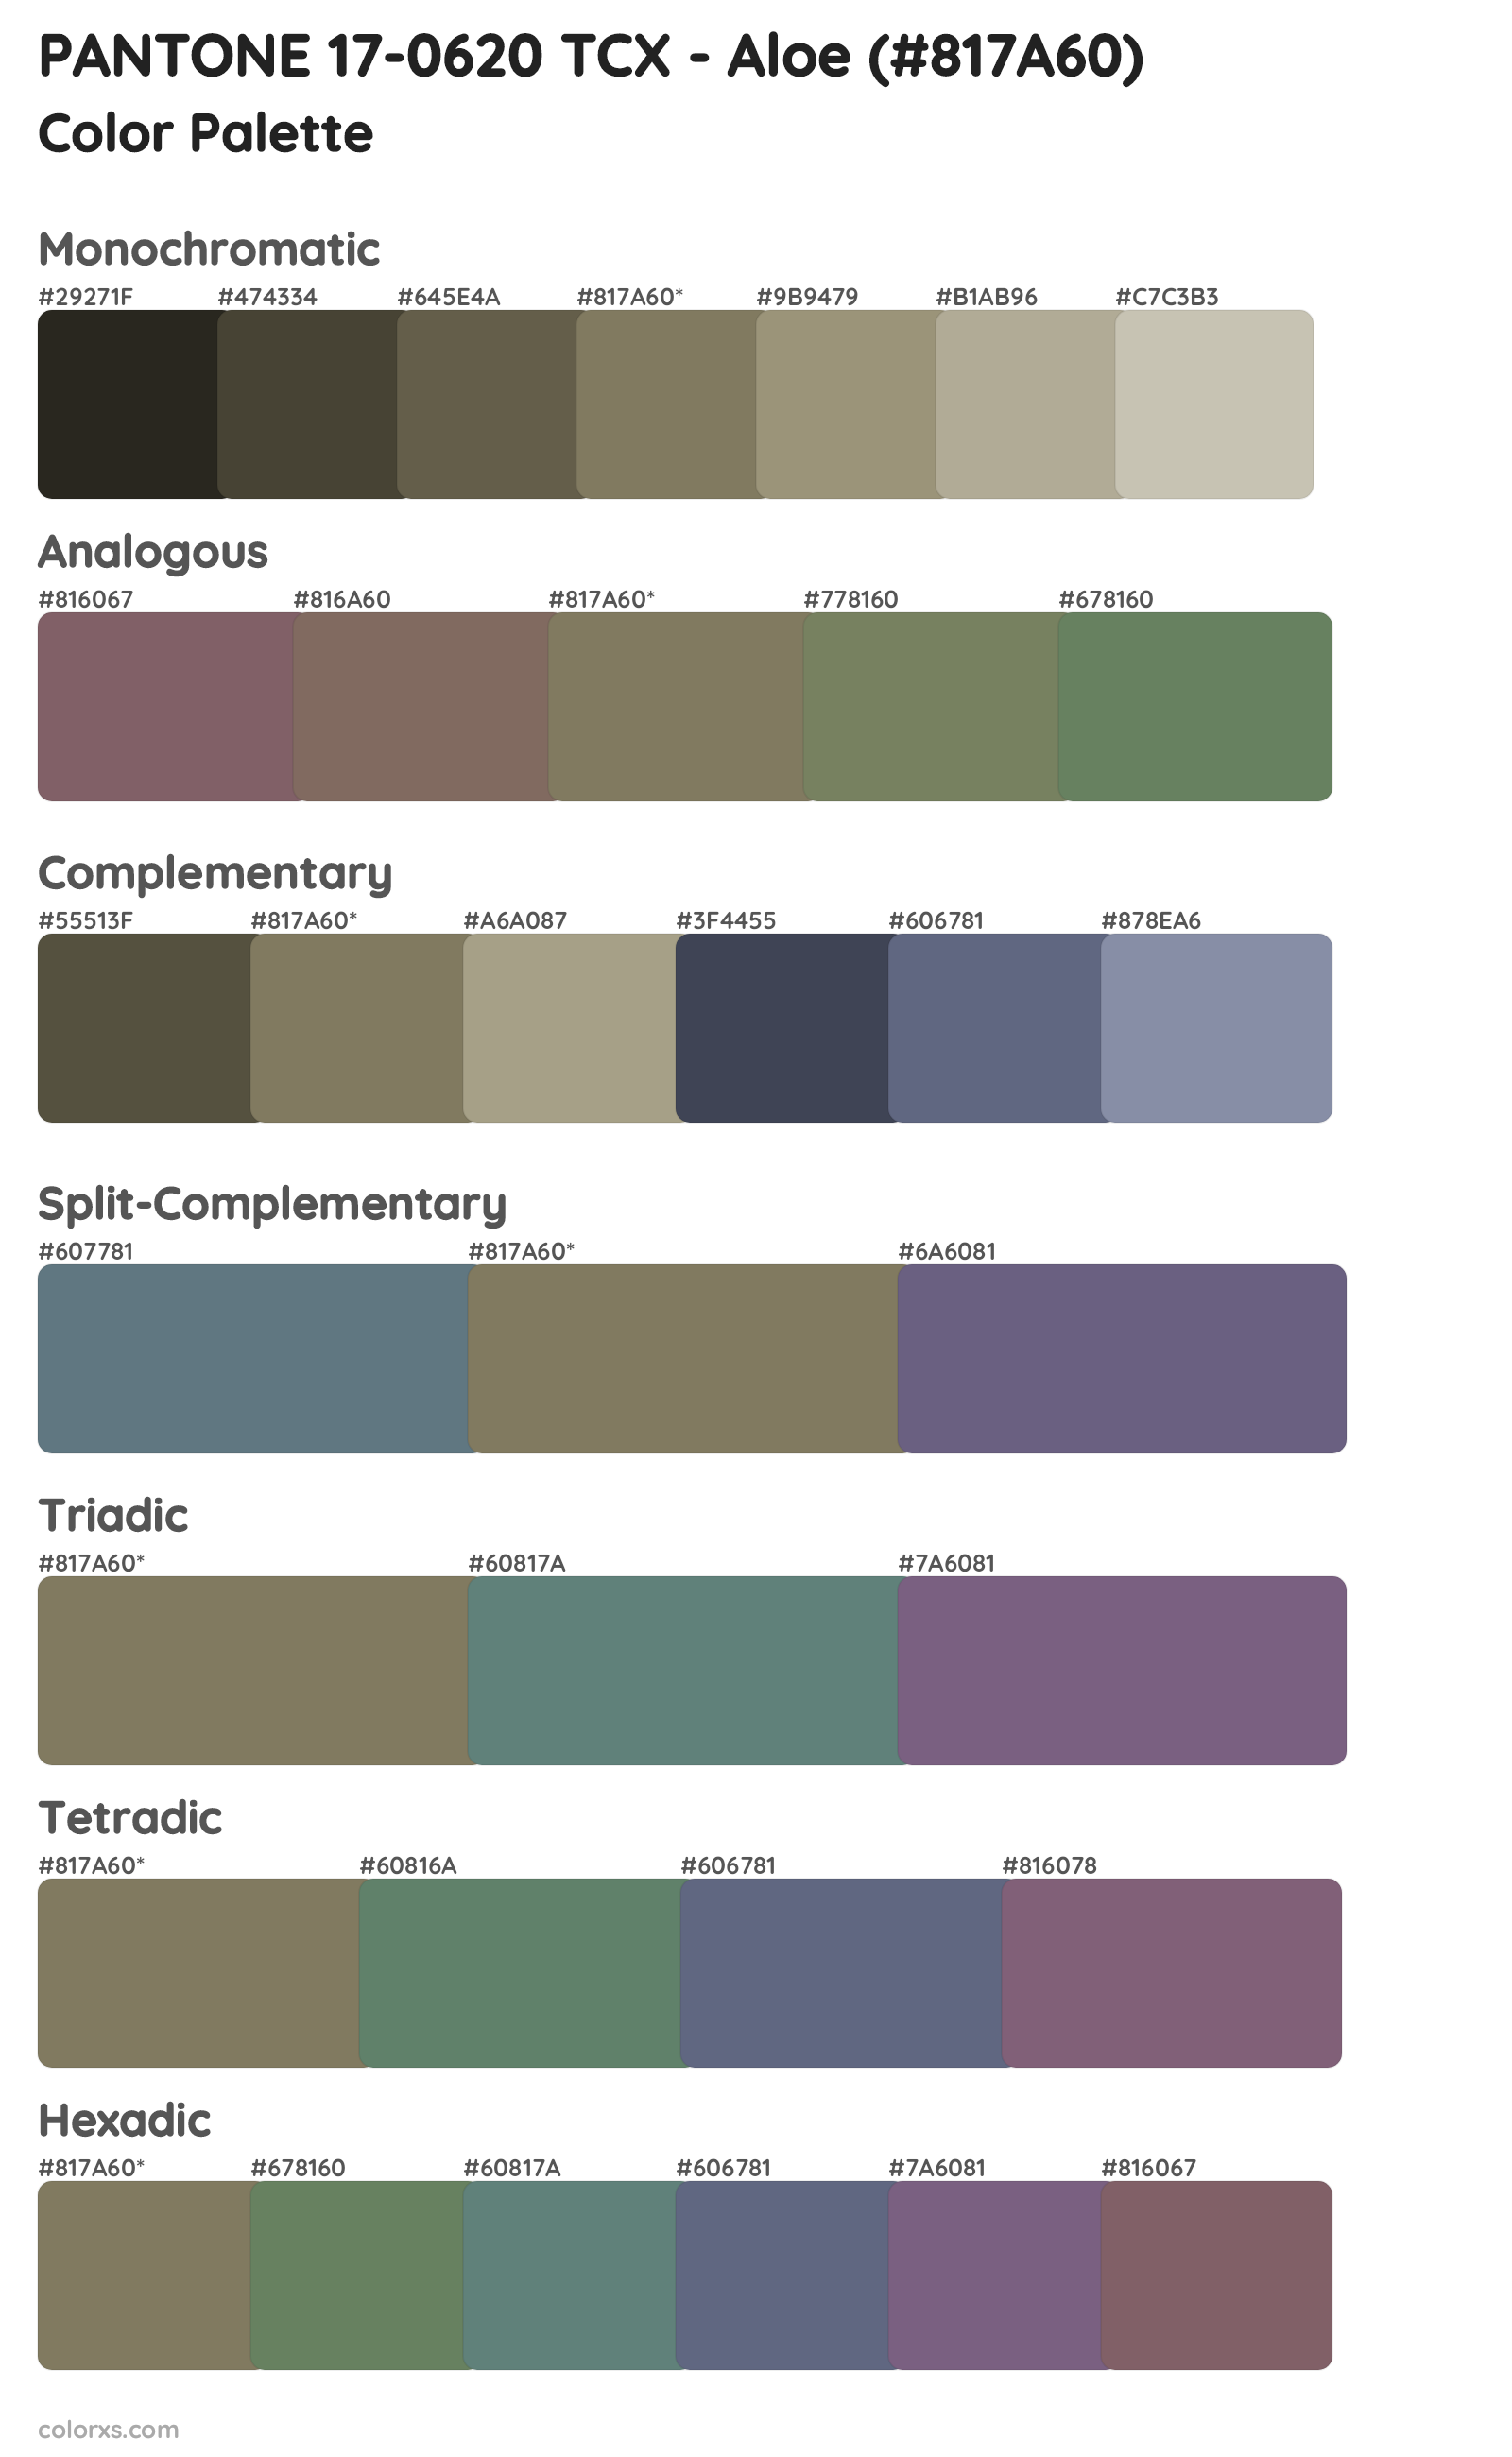 PANTONE 17-0620 TCX - Aloe Color Scheme Palettes